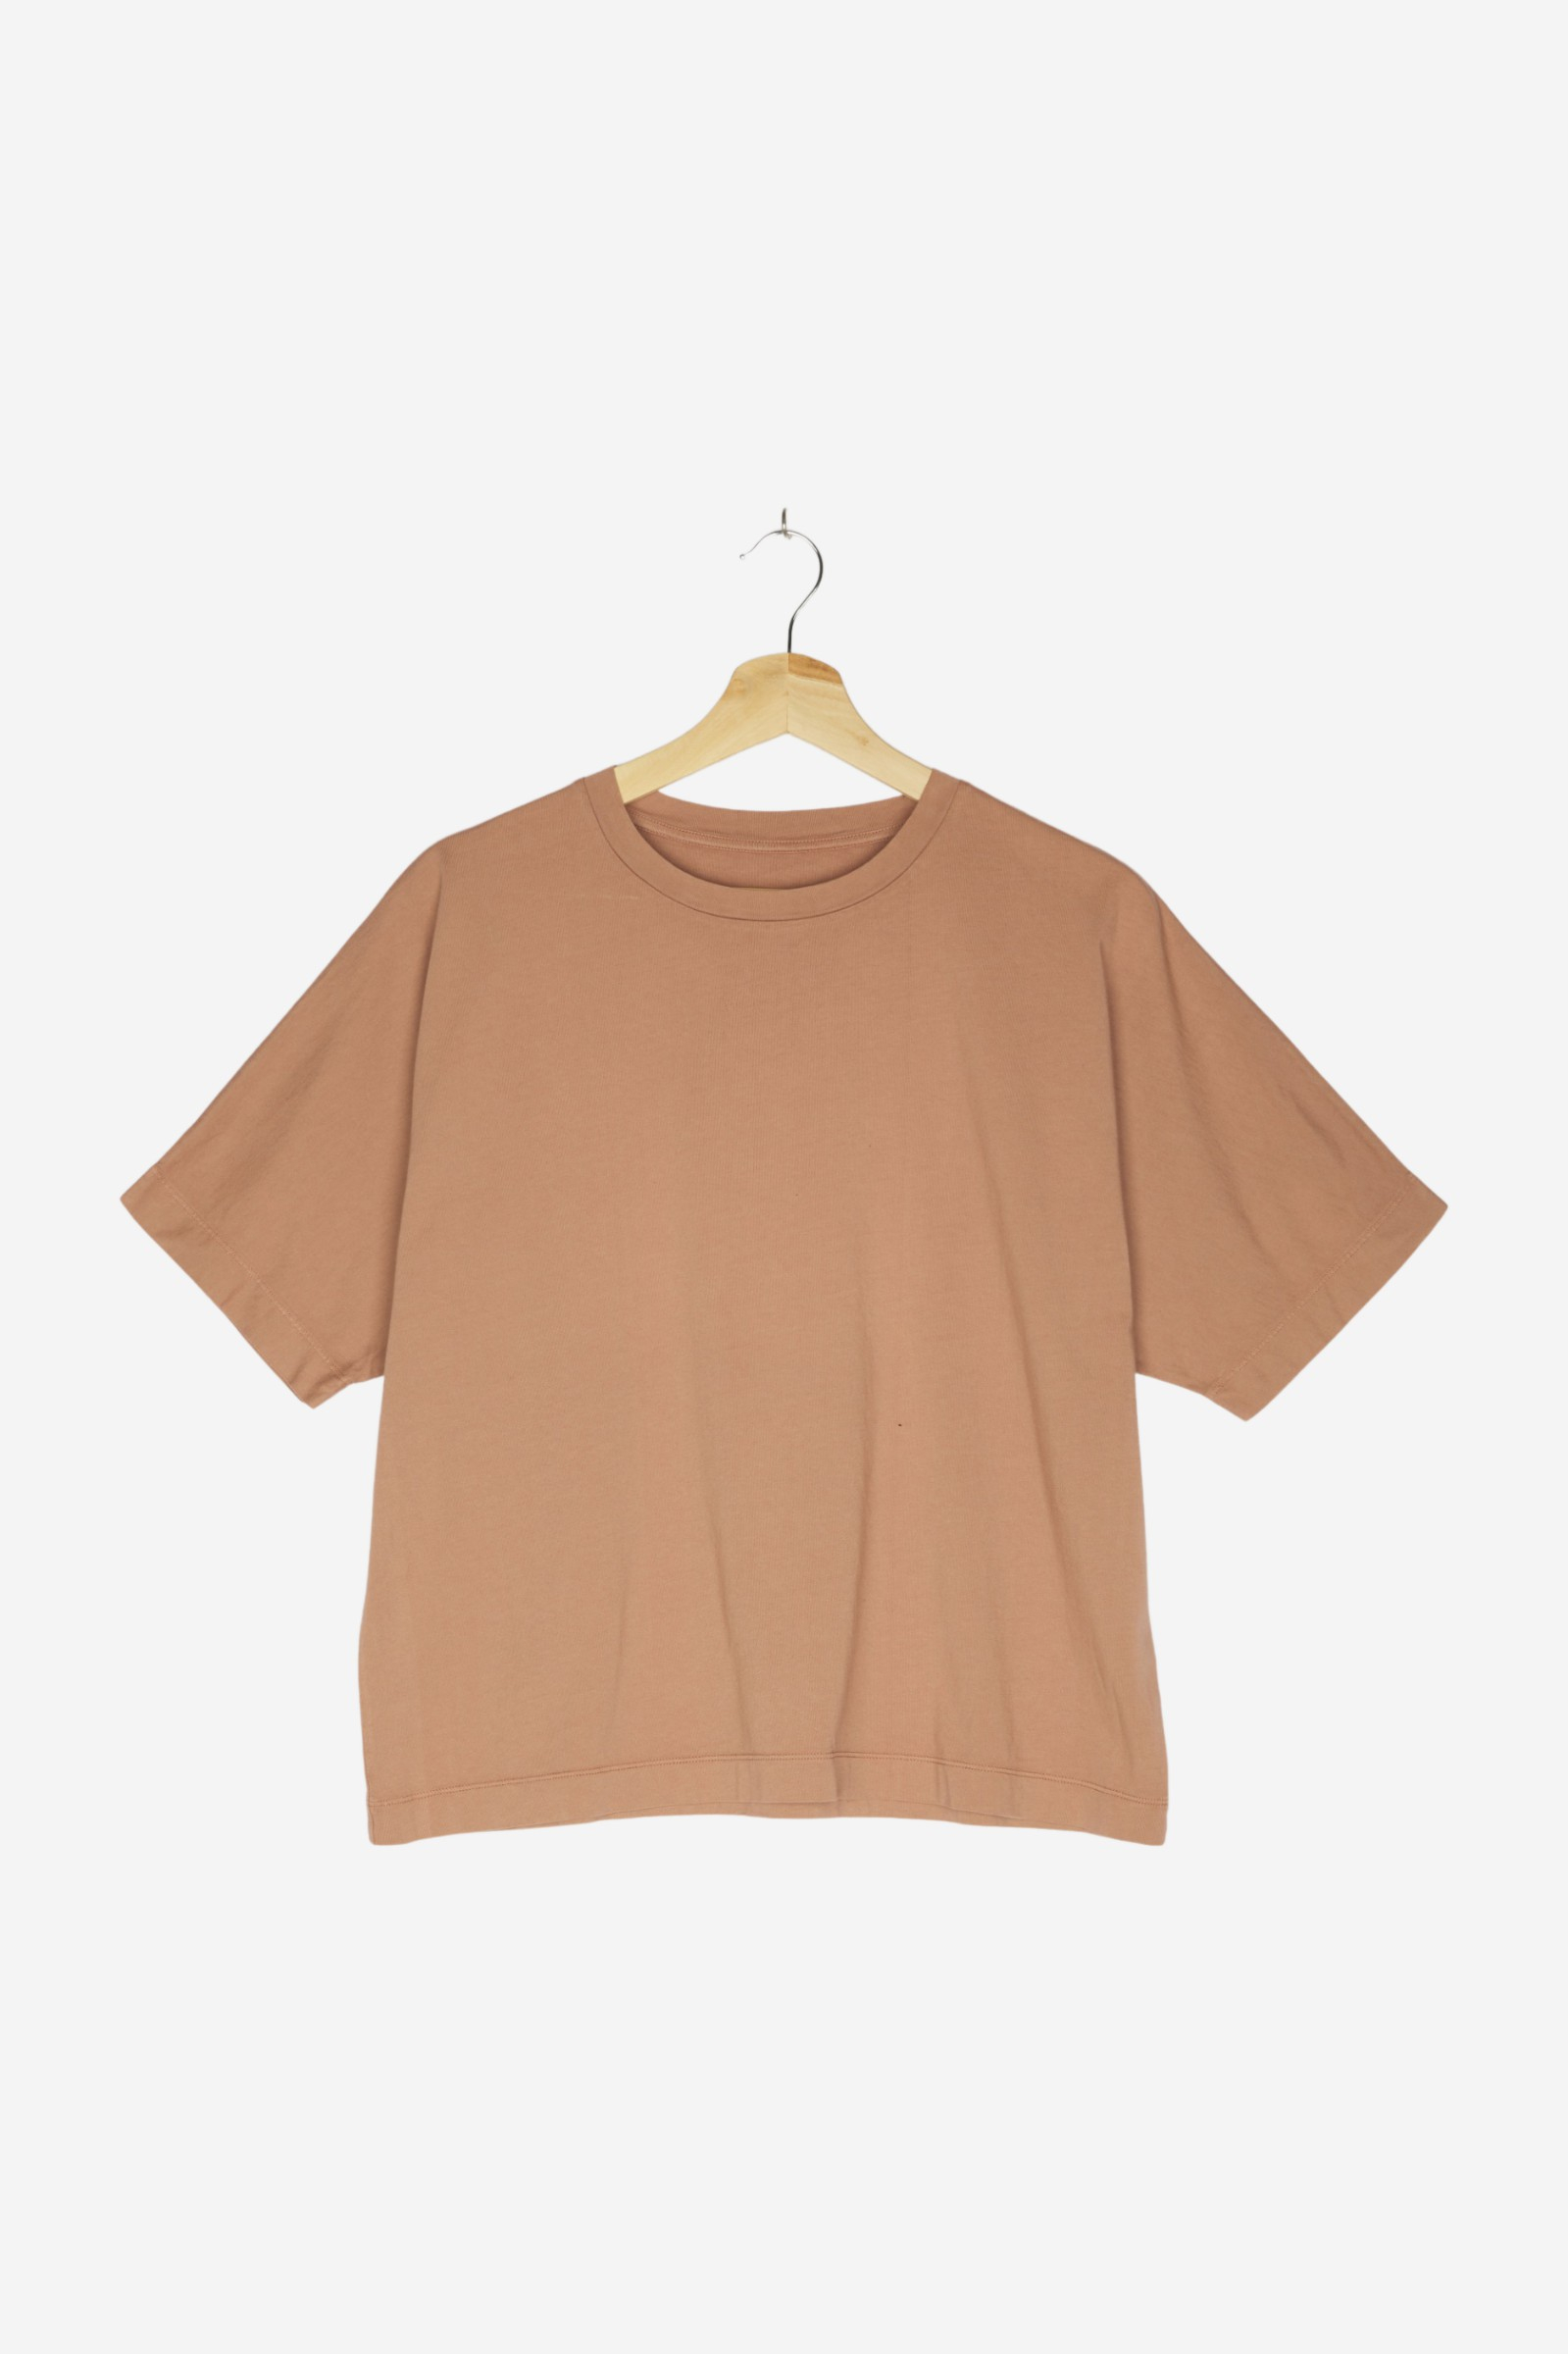 women Tops & T-Shirts Shirts / T-Shirt Rose